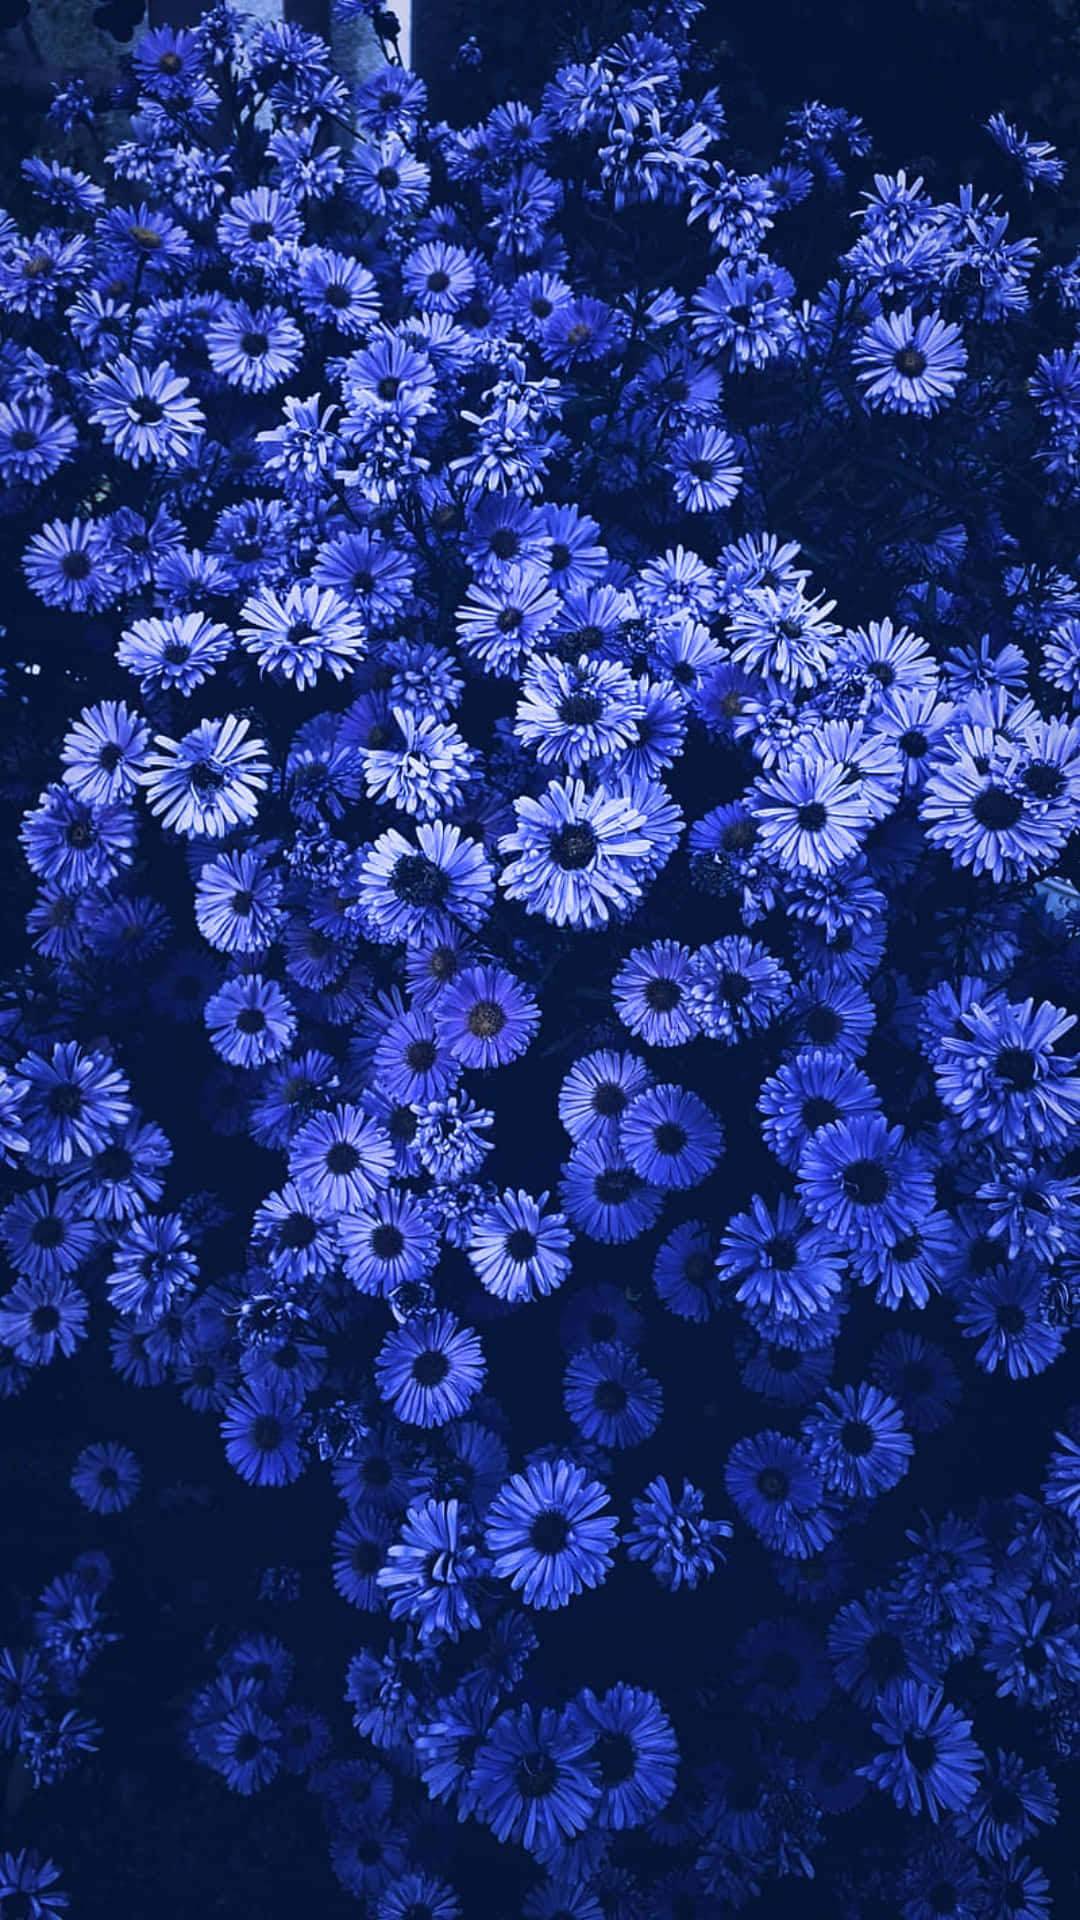 Einemagische Blaue Blume Ragt Hoch Inmitten Eines Lebendigen Feldes Auf.